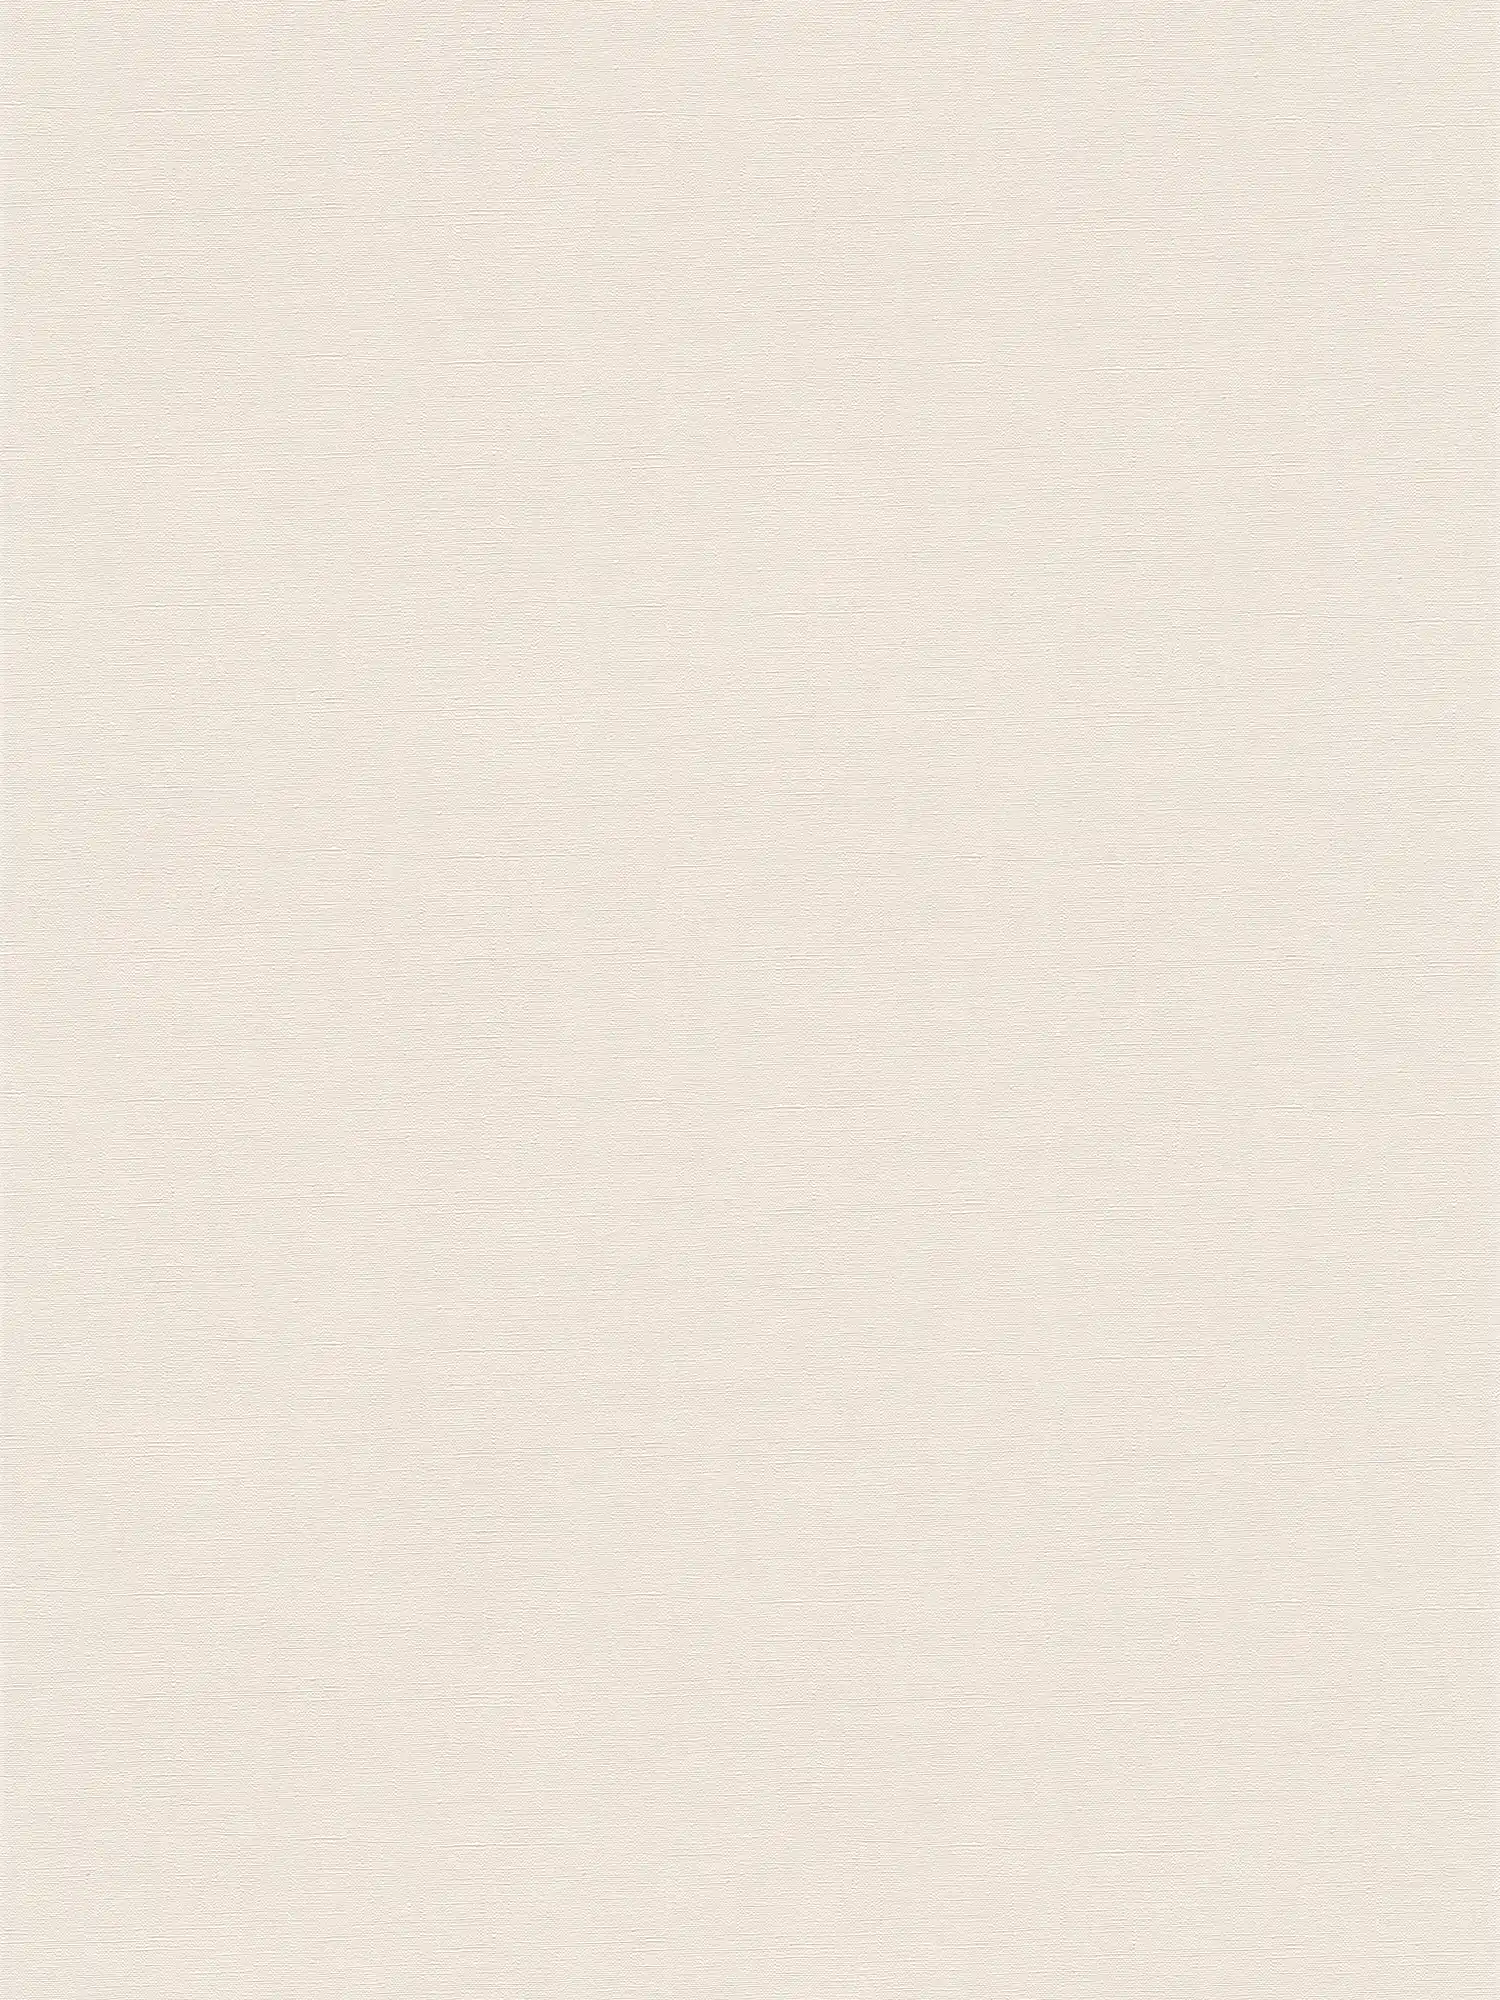             Papel pintado no tejido liso con ligero brillo - beige, crema
        